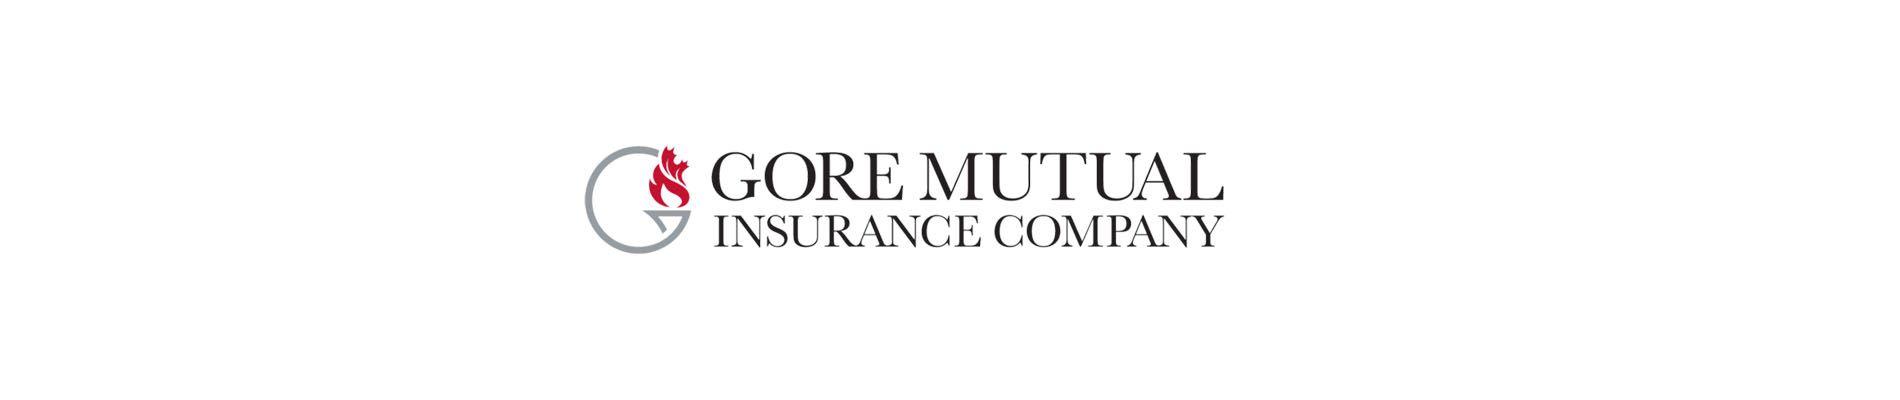 Gore Company Logo - Gore Mutual Insurance Logo - Regal Insurance